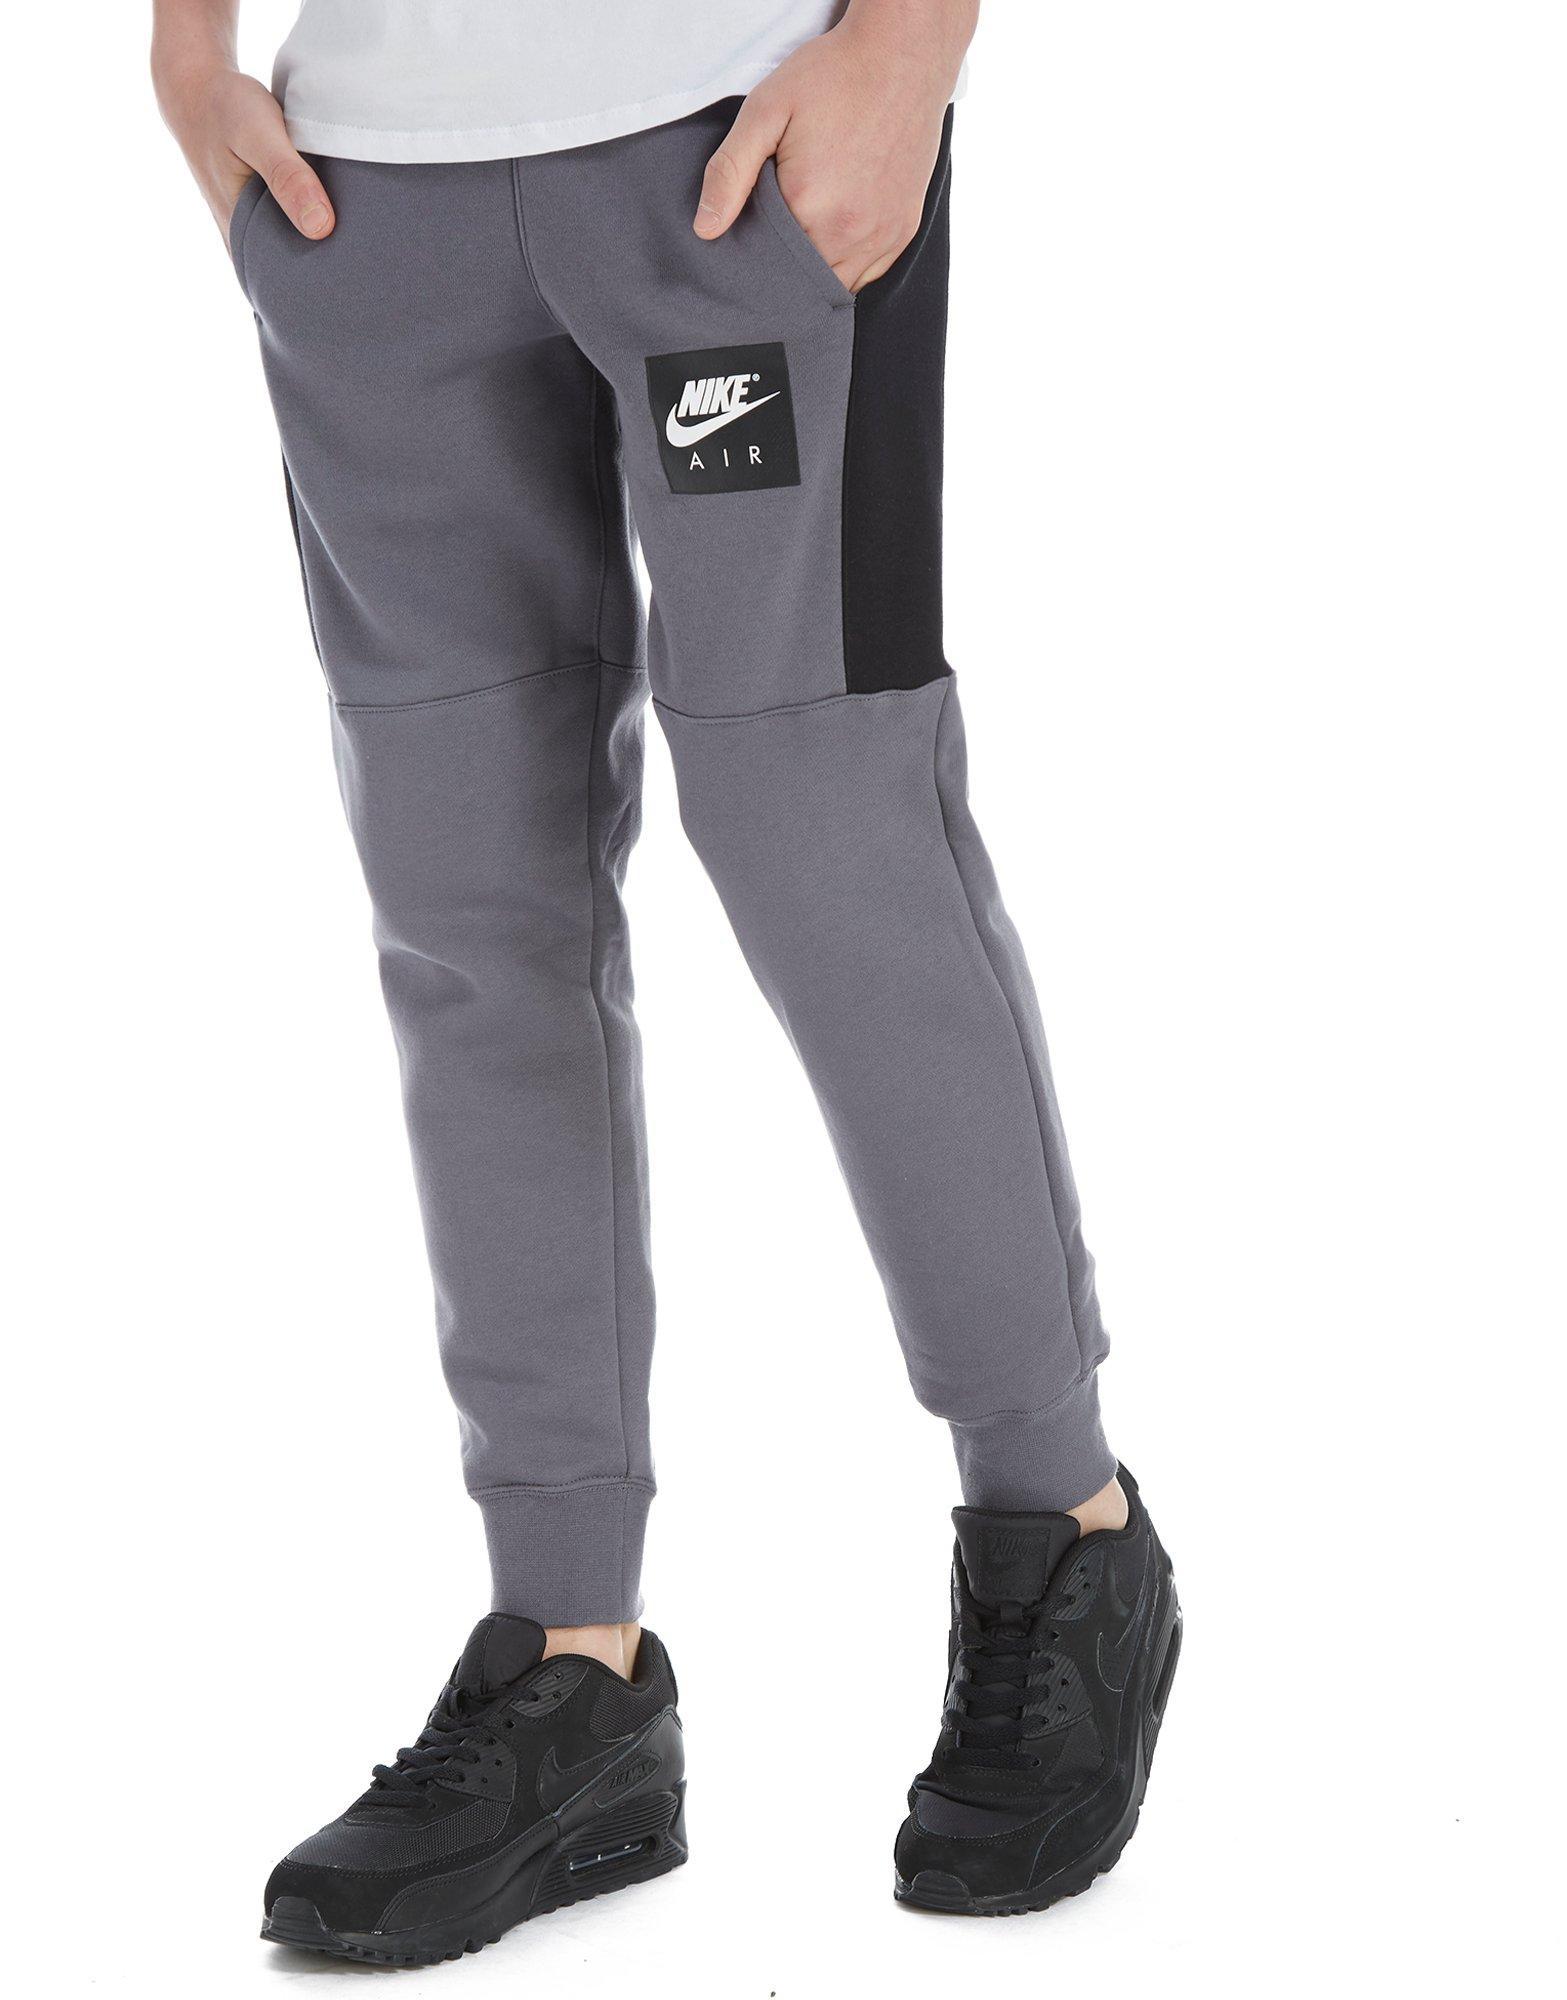 Nike Cotton Air Pants Junior in Grey 